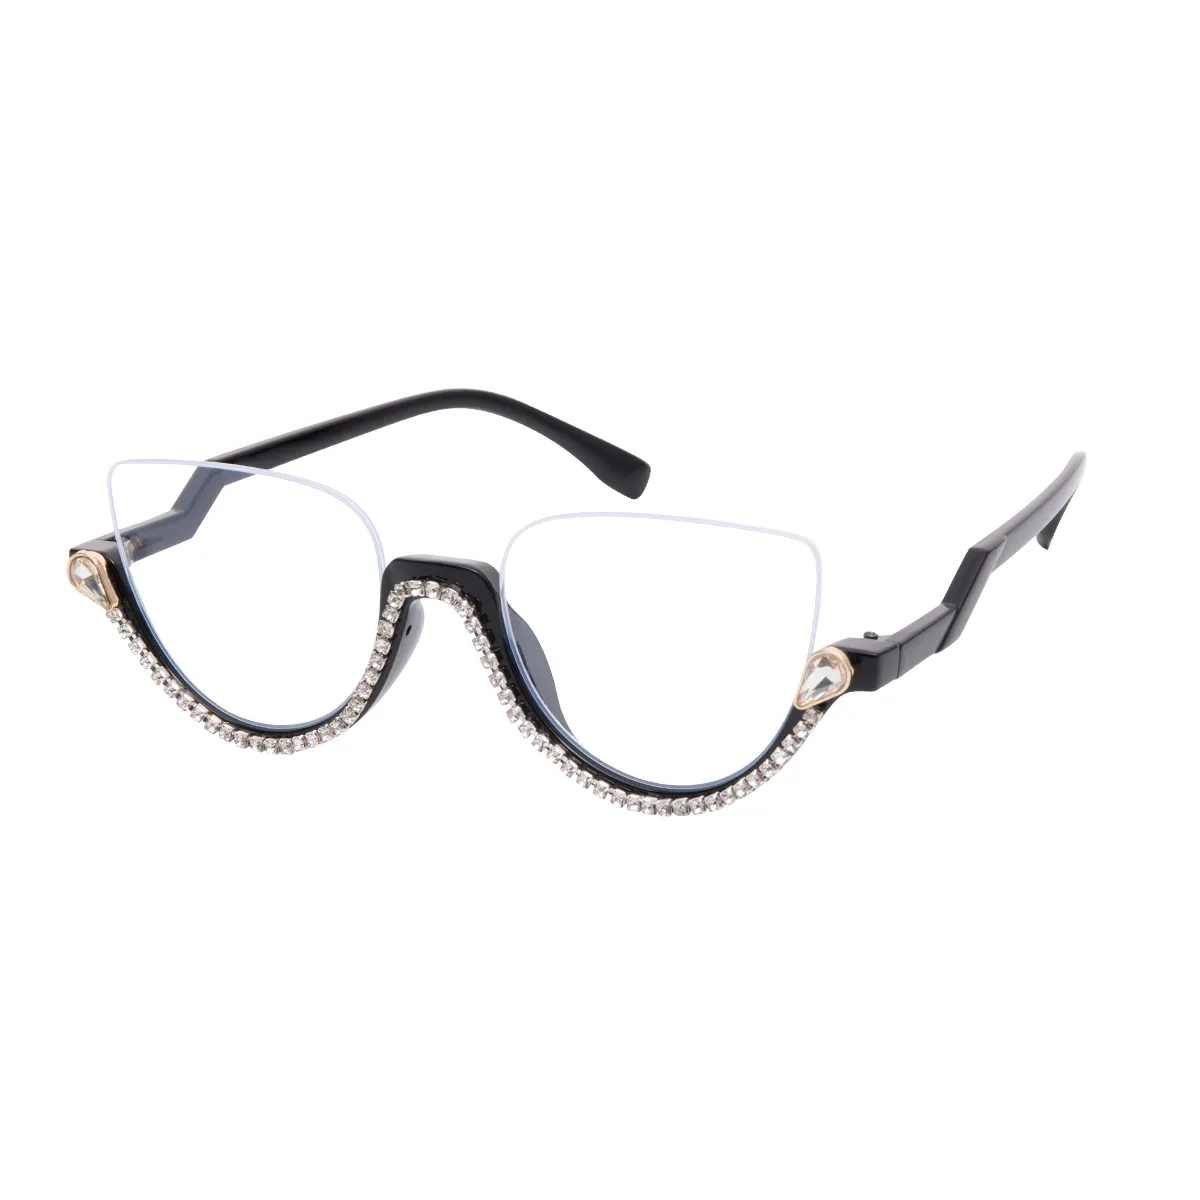 Bronte - Cat-eye Black Glasses for Women